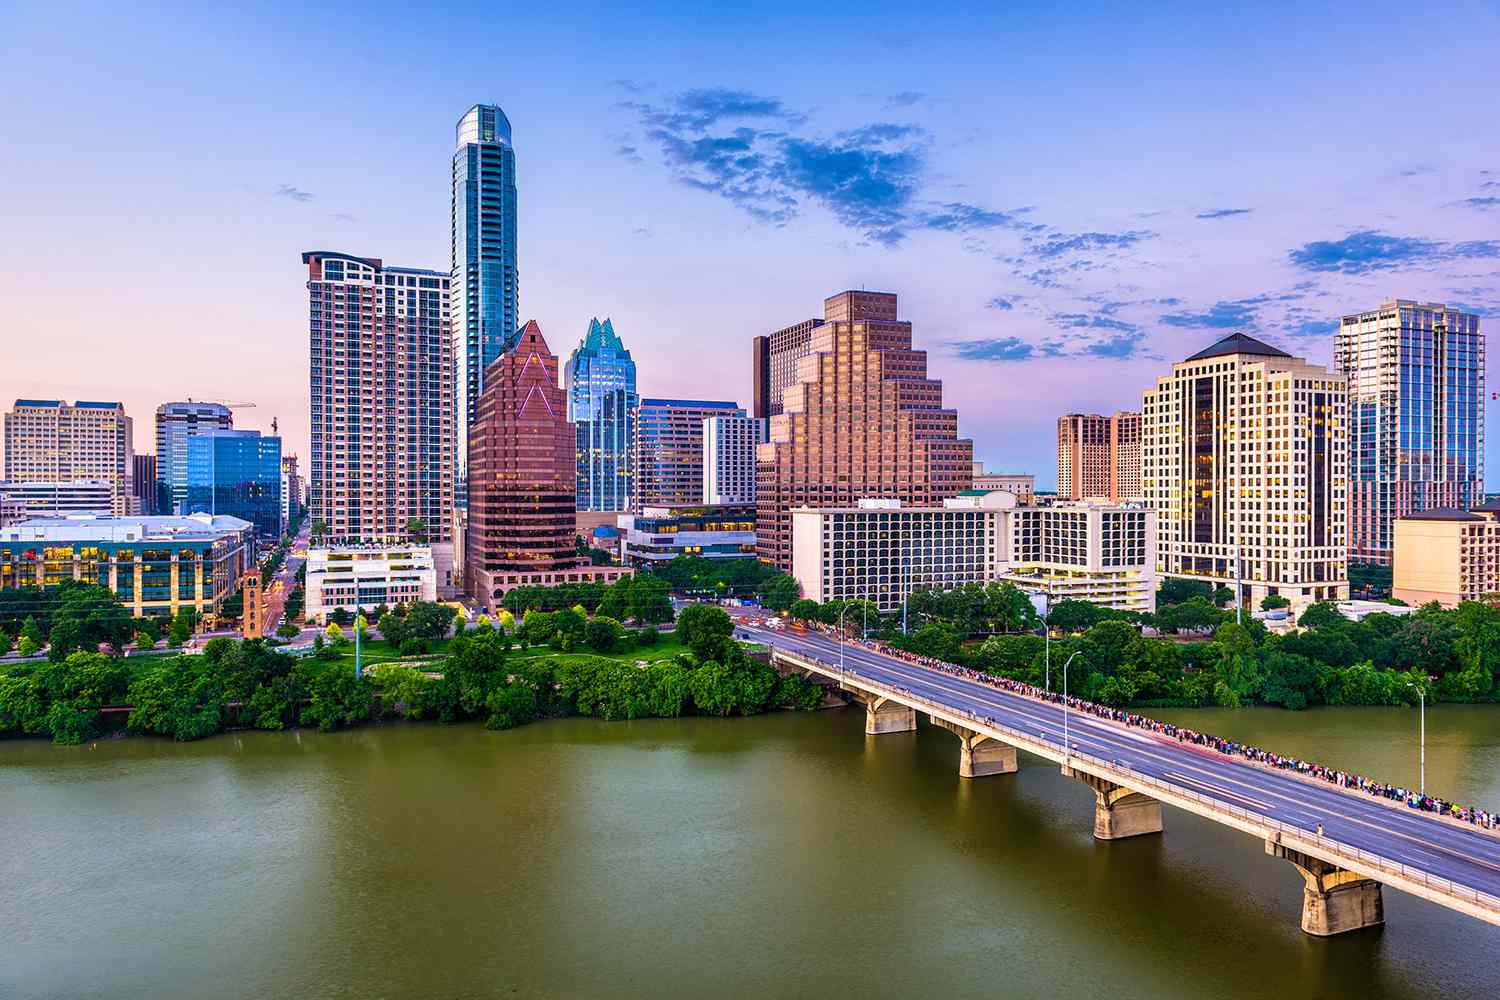 Vue aérienne du centre-ville d'Austin, Texas